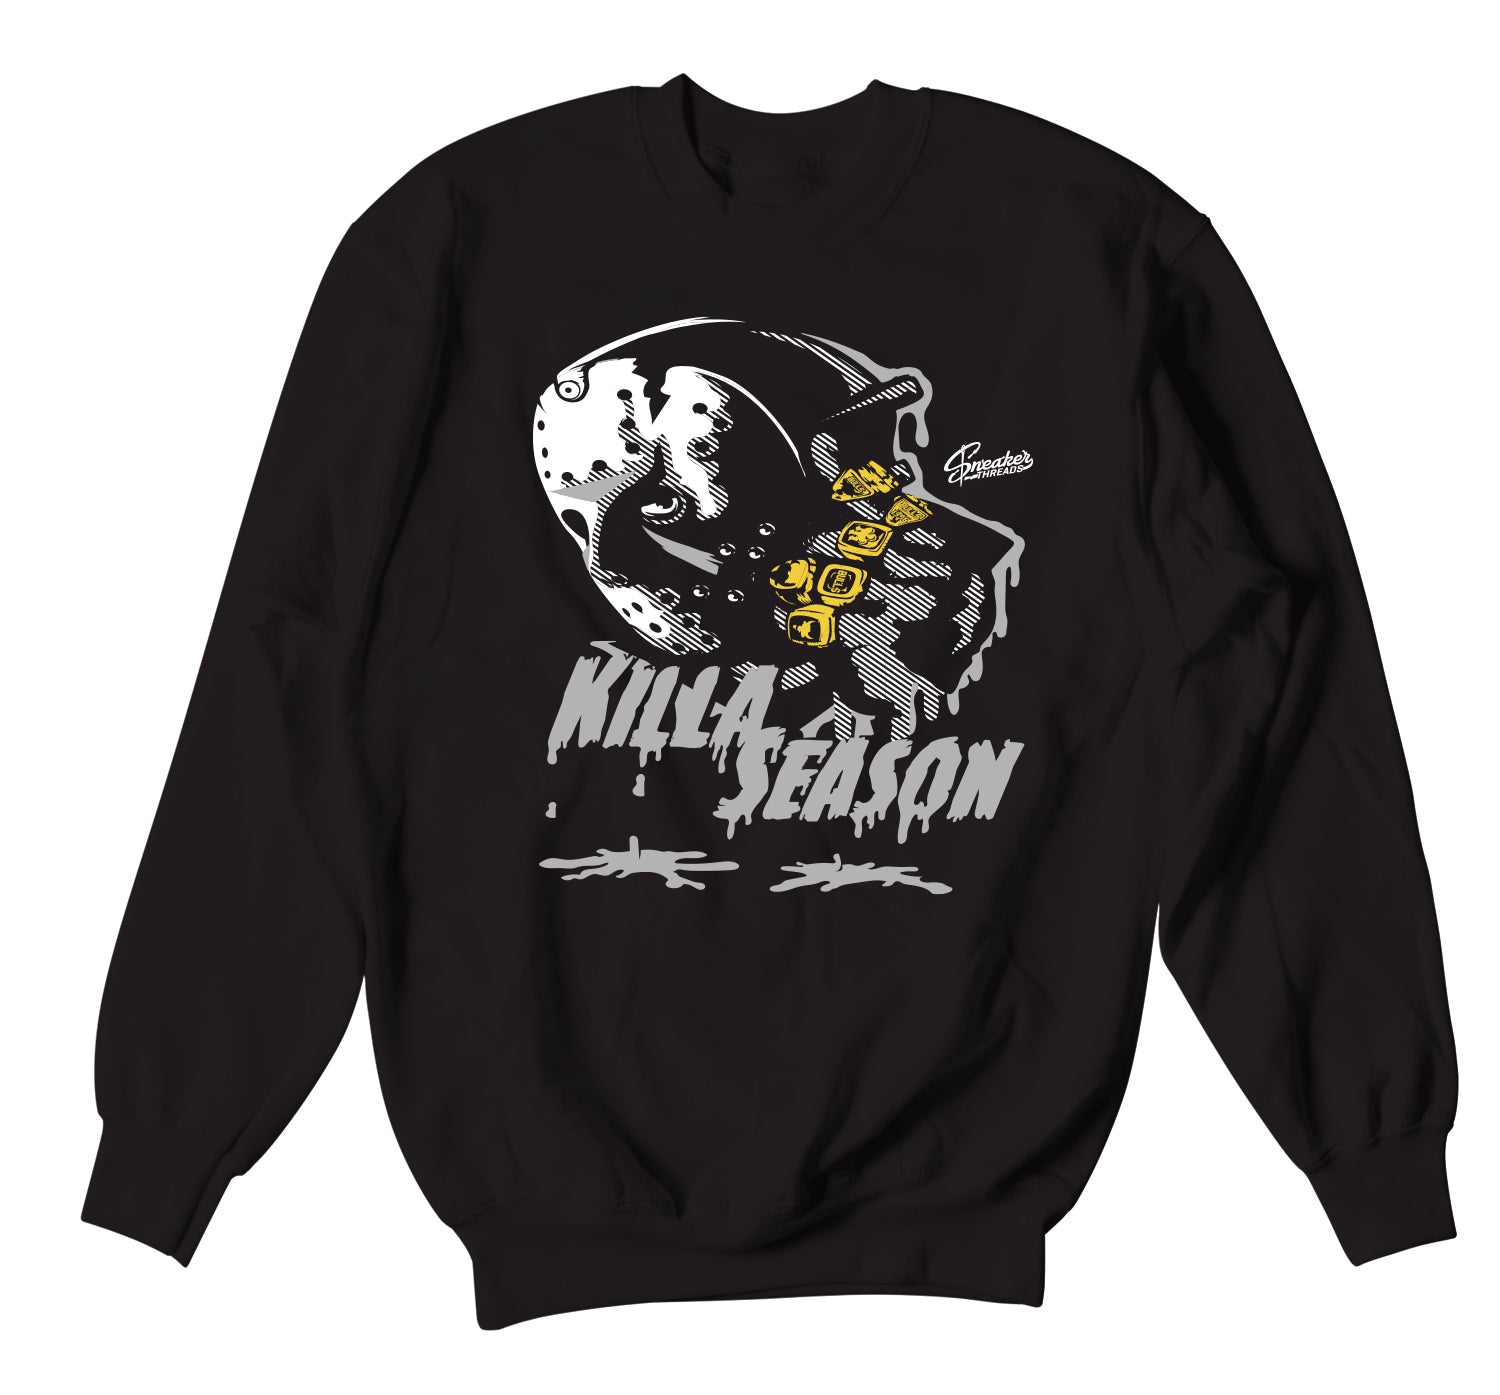 Retro 11 Jubilee Sweater - Killa Season - Black